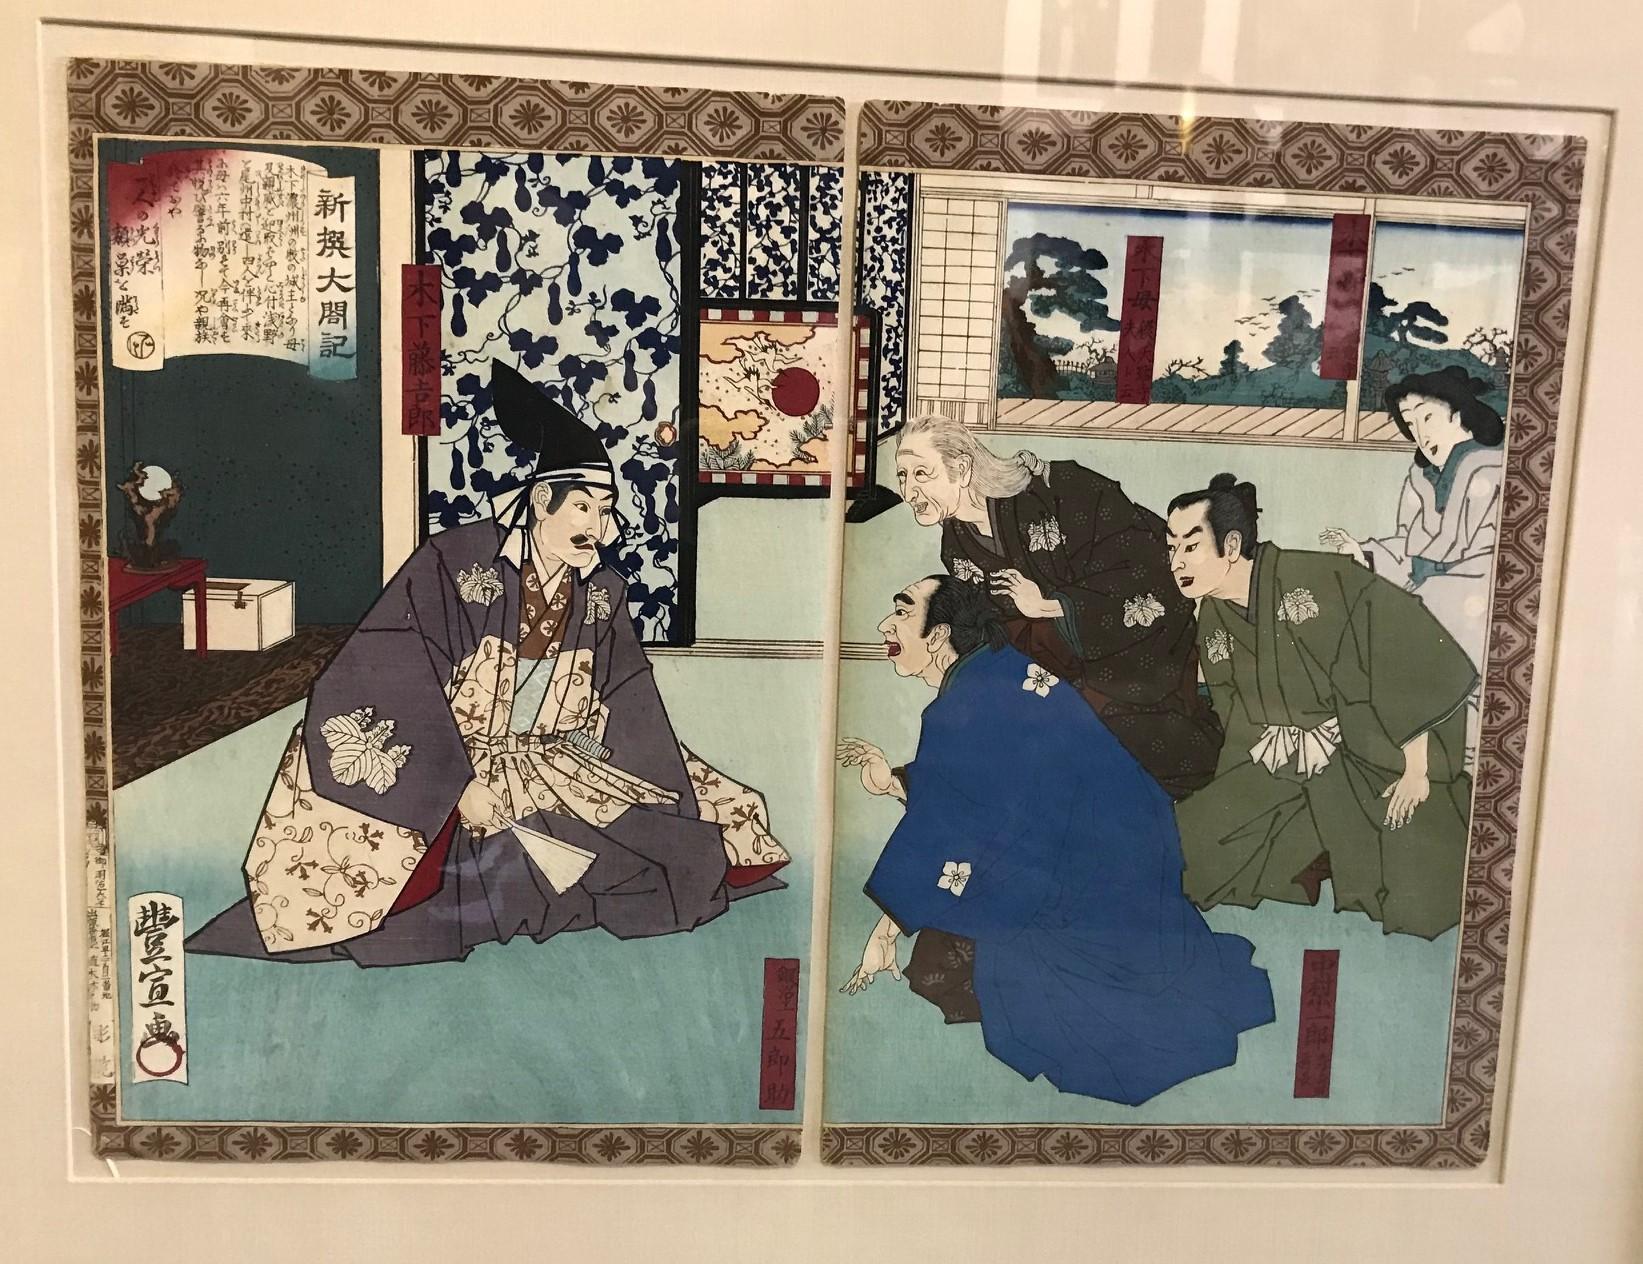 Ein klassisches Bild des berühmten japanischen Grafikers Utagawa Toyonobu aus seiner neu ausgewählten Serie Geschichte des Toyotomi Hideyoshi.

Ein sehr guter Druck, Zustand und Farbe. Professionell gerahmt von Jerry Solomon, einem renommierten